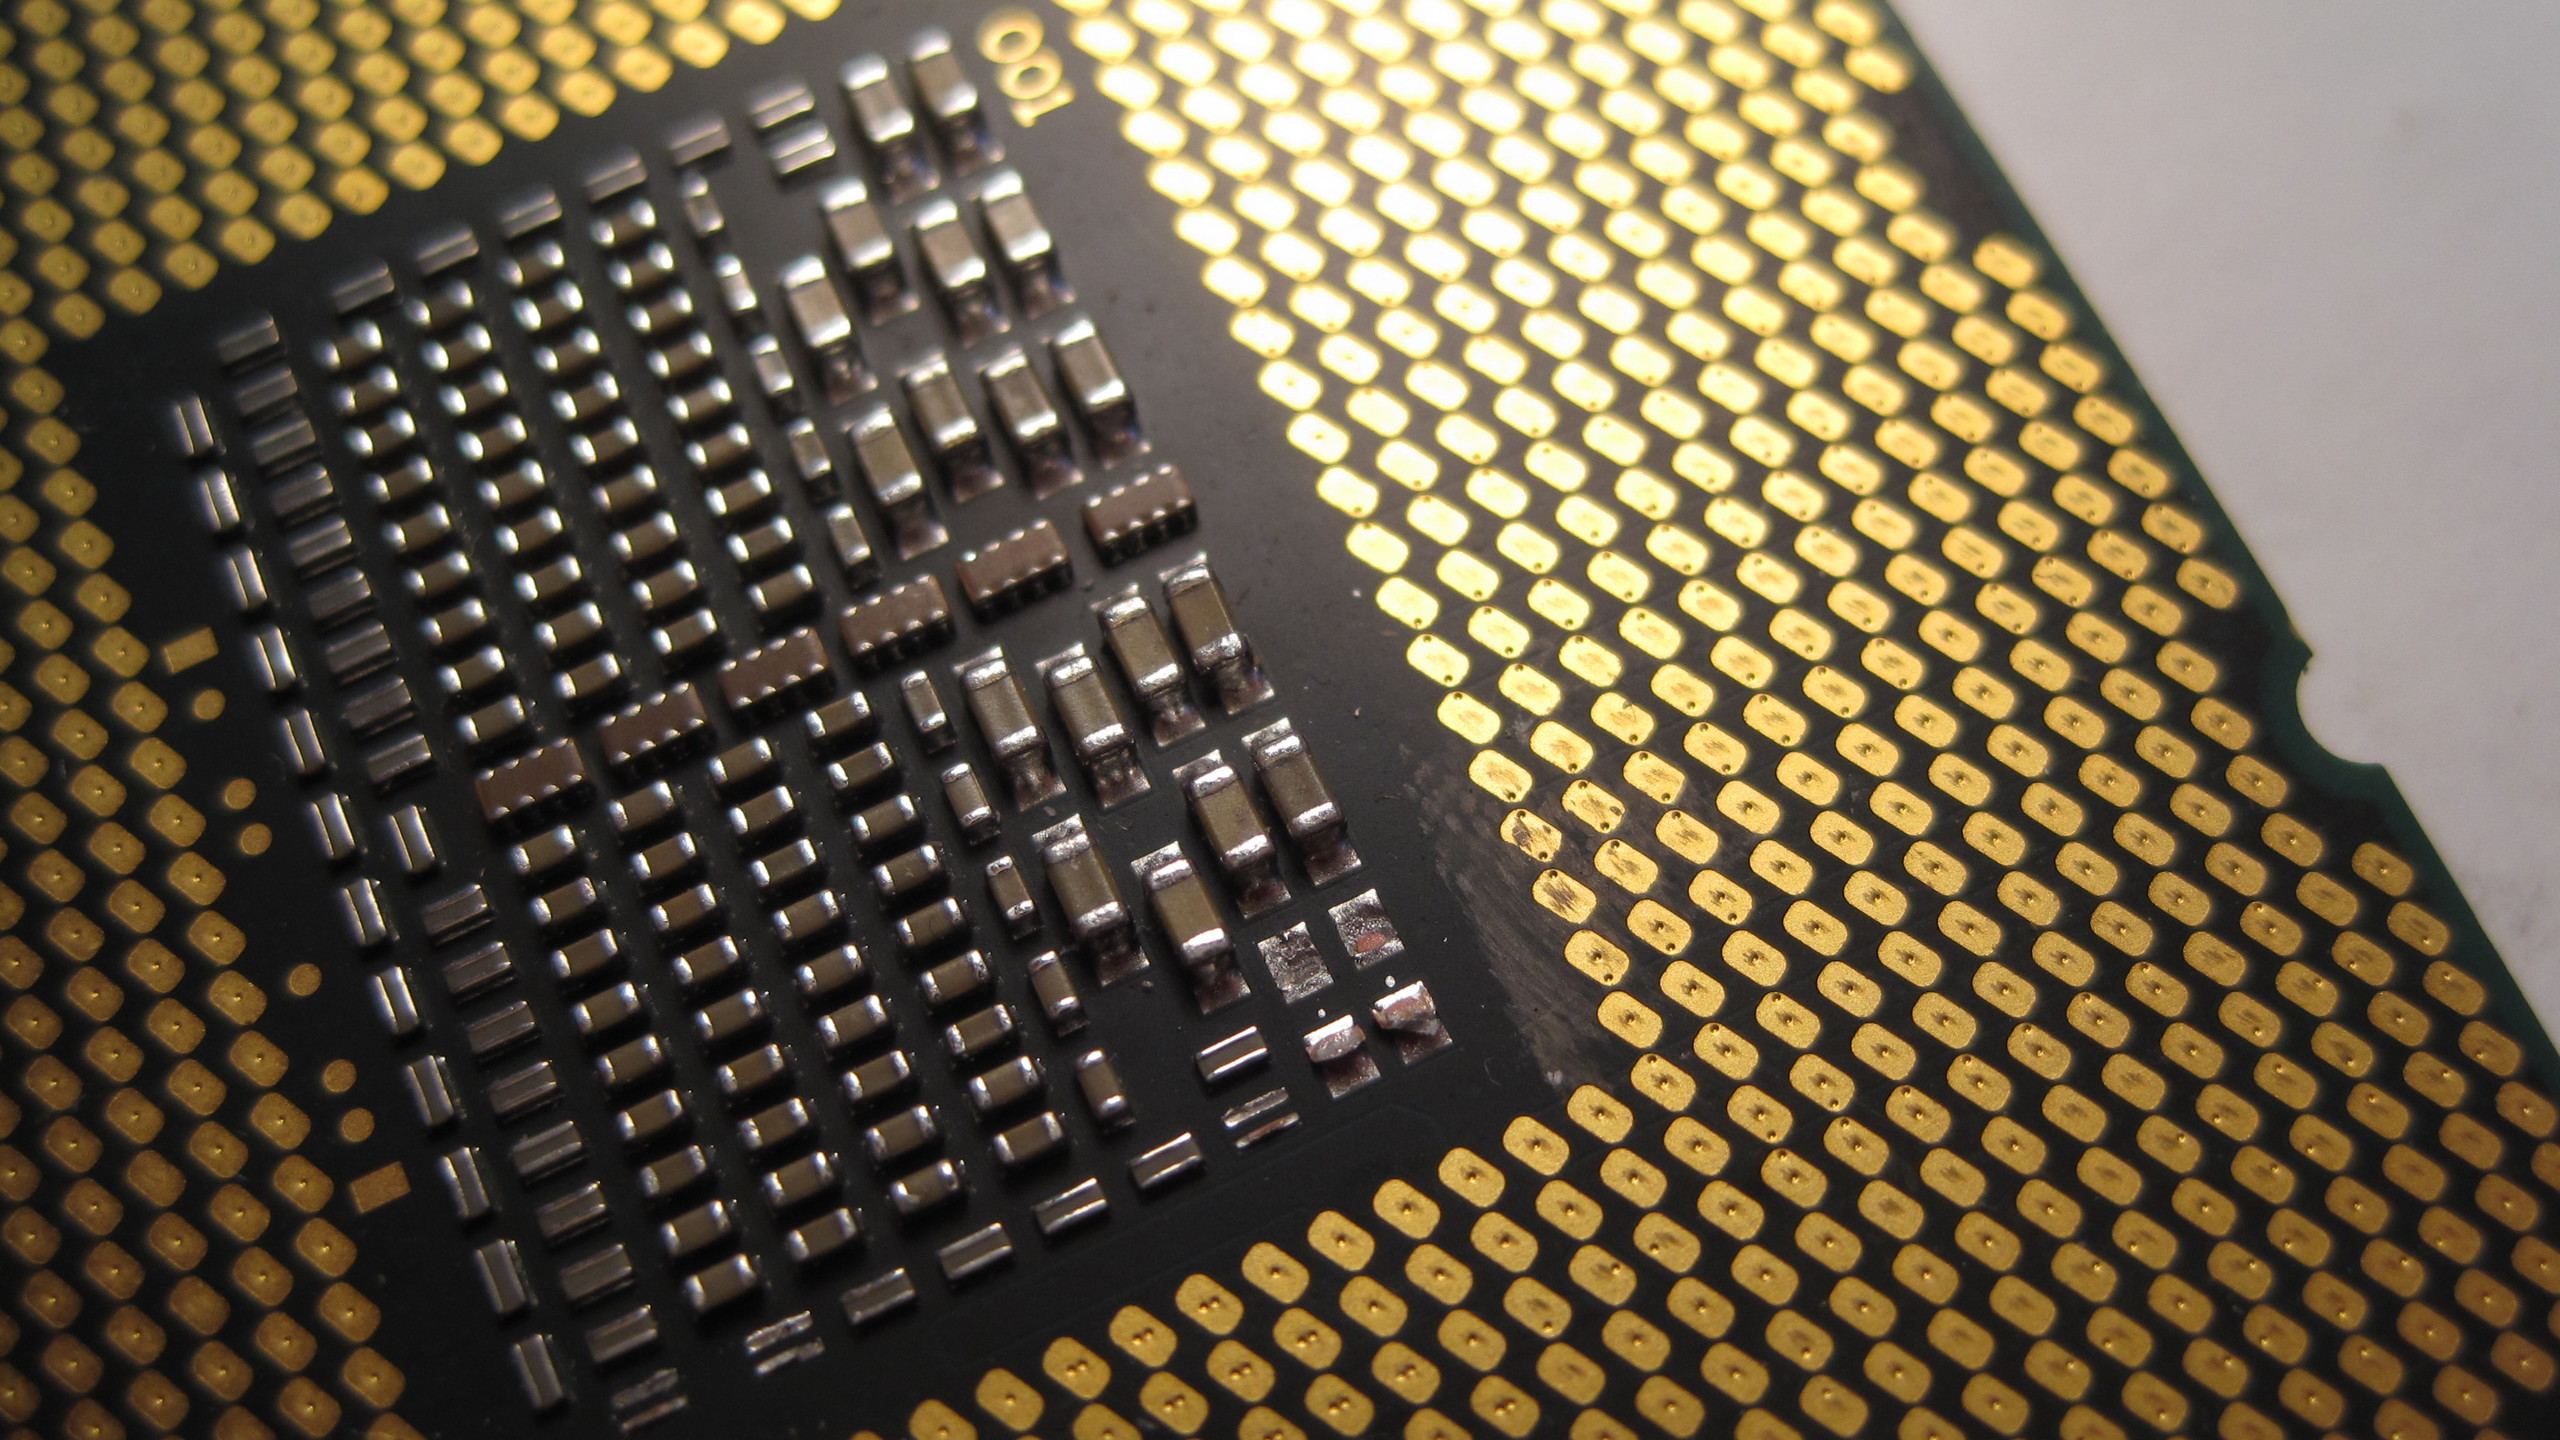 2560x1440 Intel i7 capacitors/resistors